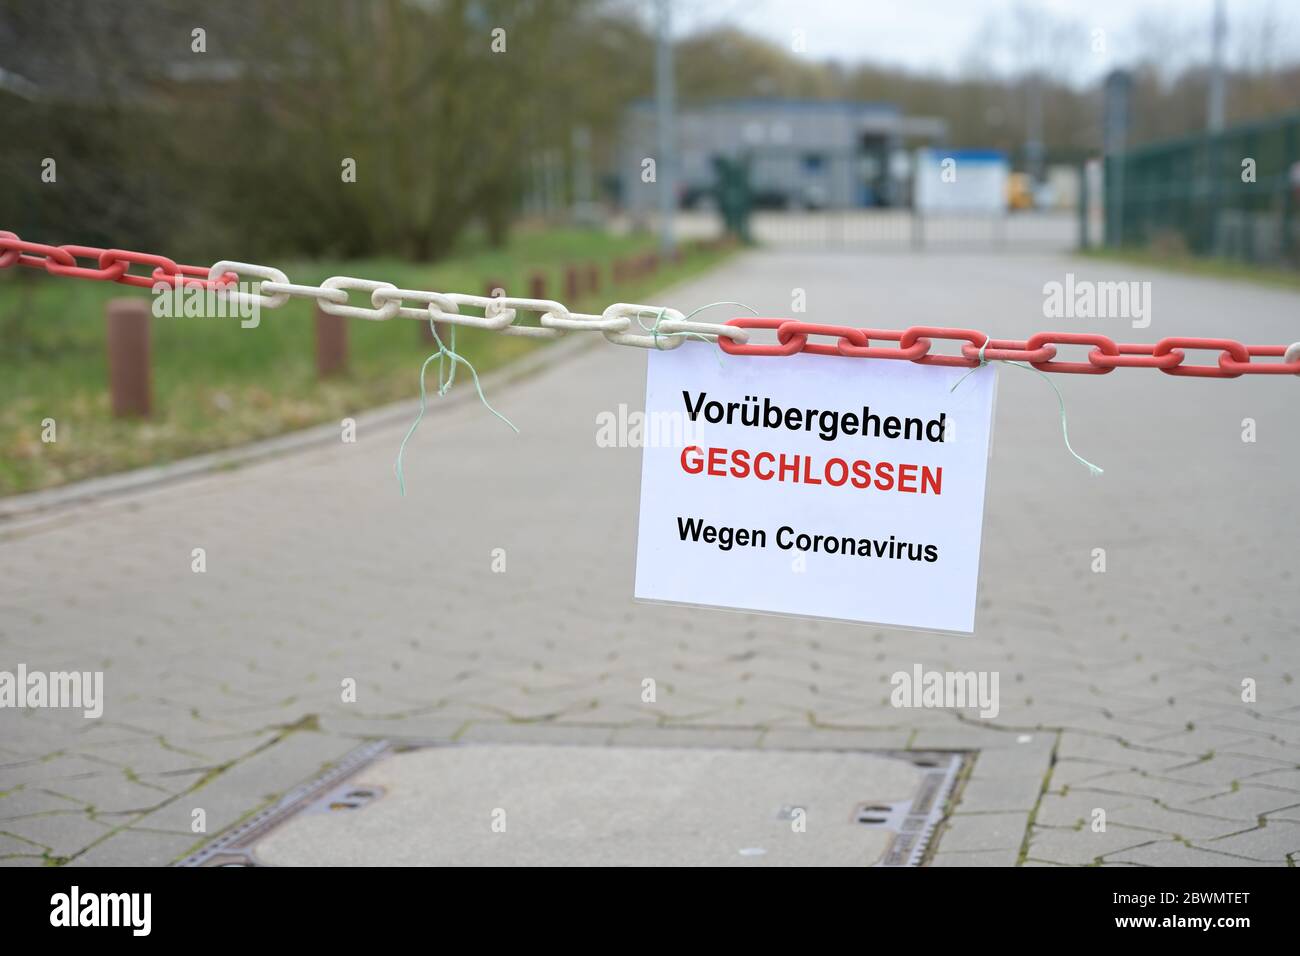 Rot-weiße Kettenschranke vor einer Firma und Schild mit deutschem Text vorübergehend geschlossen, wegen Coronavirus, d.h. vorübergehend geschlossen wegen t Stockfoto